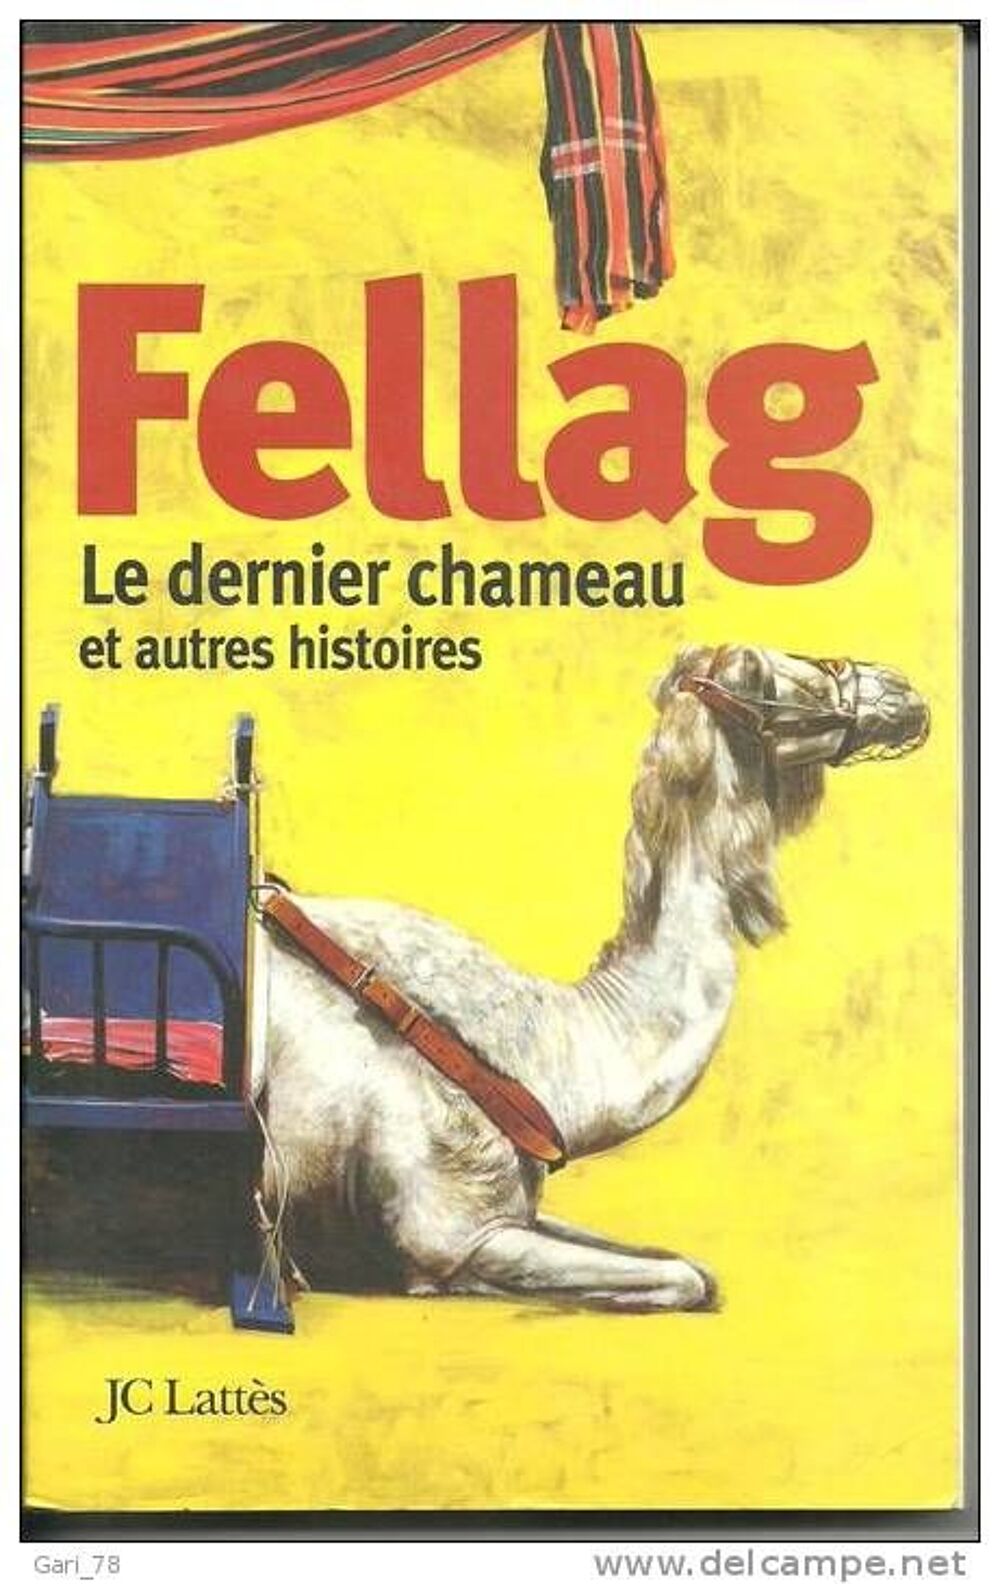 FELLAG Le Dernier Chameau et autres histoires Livres et BD